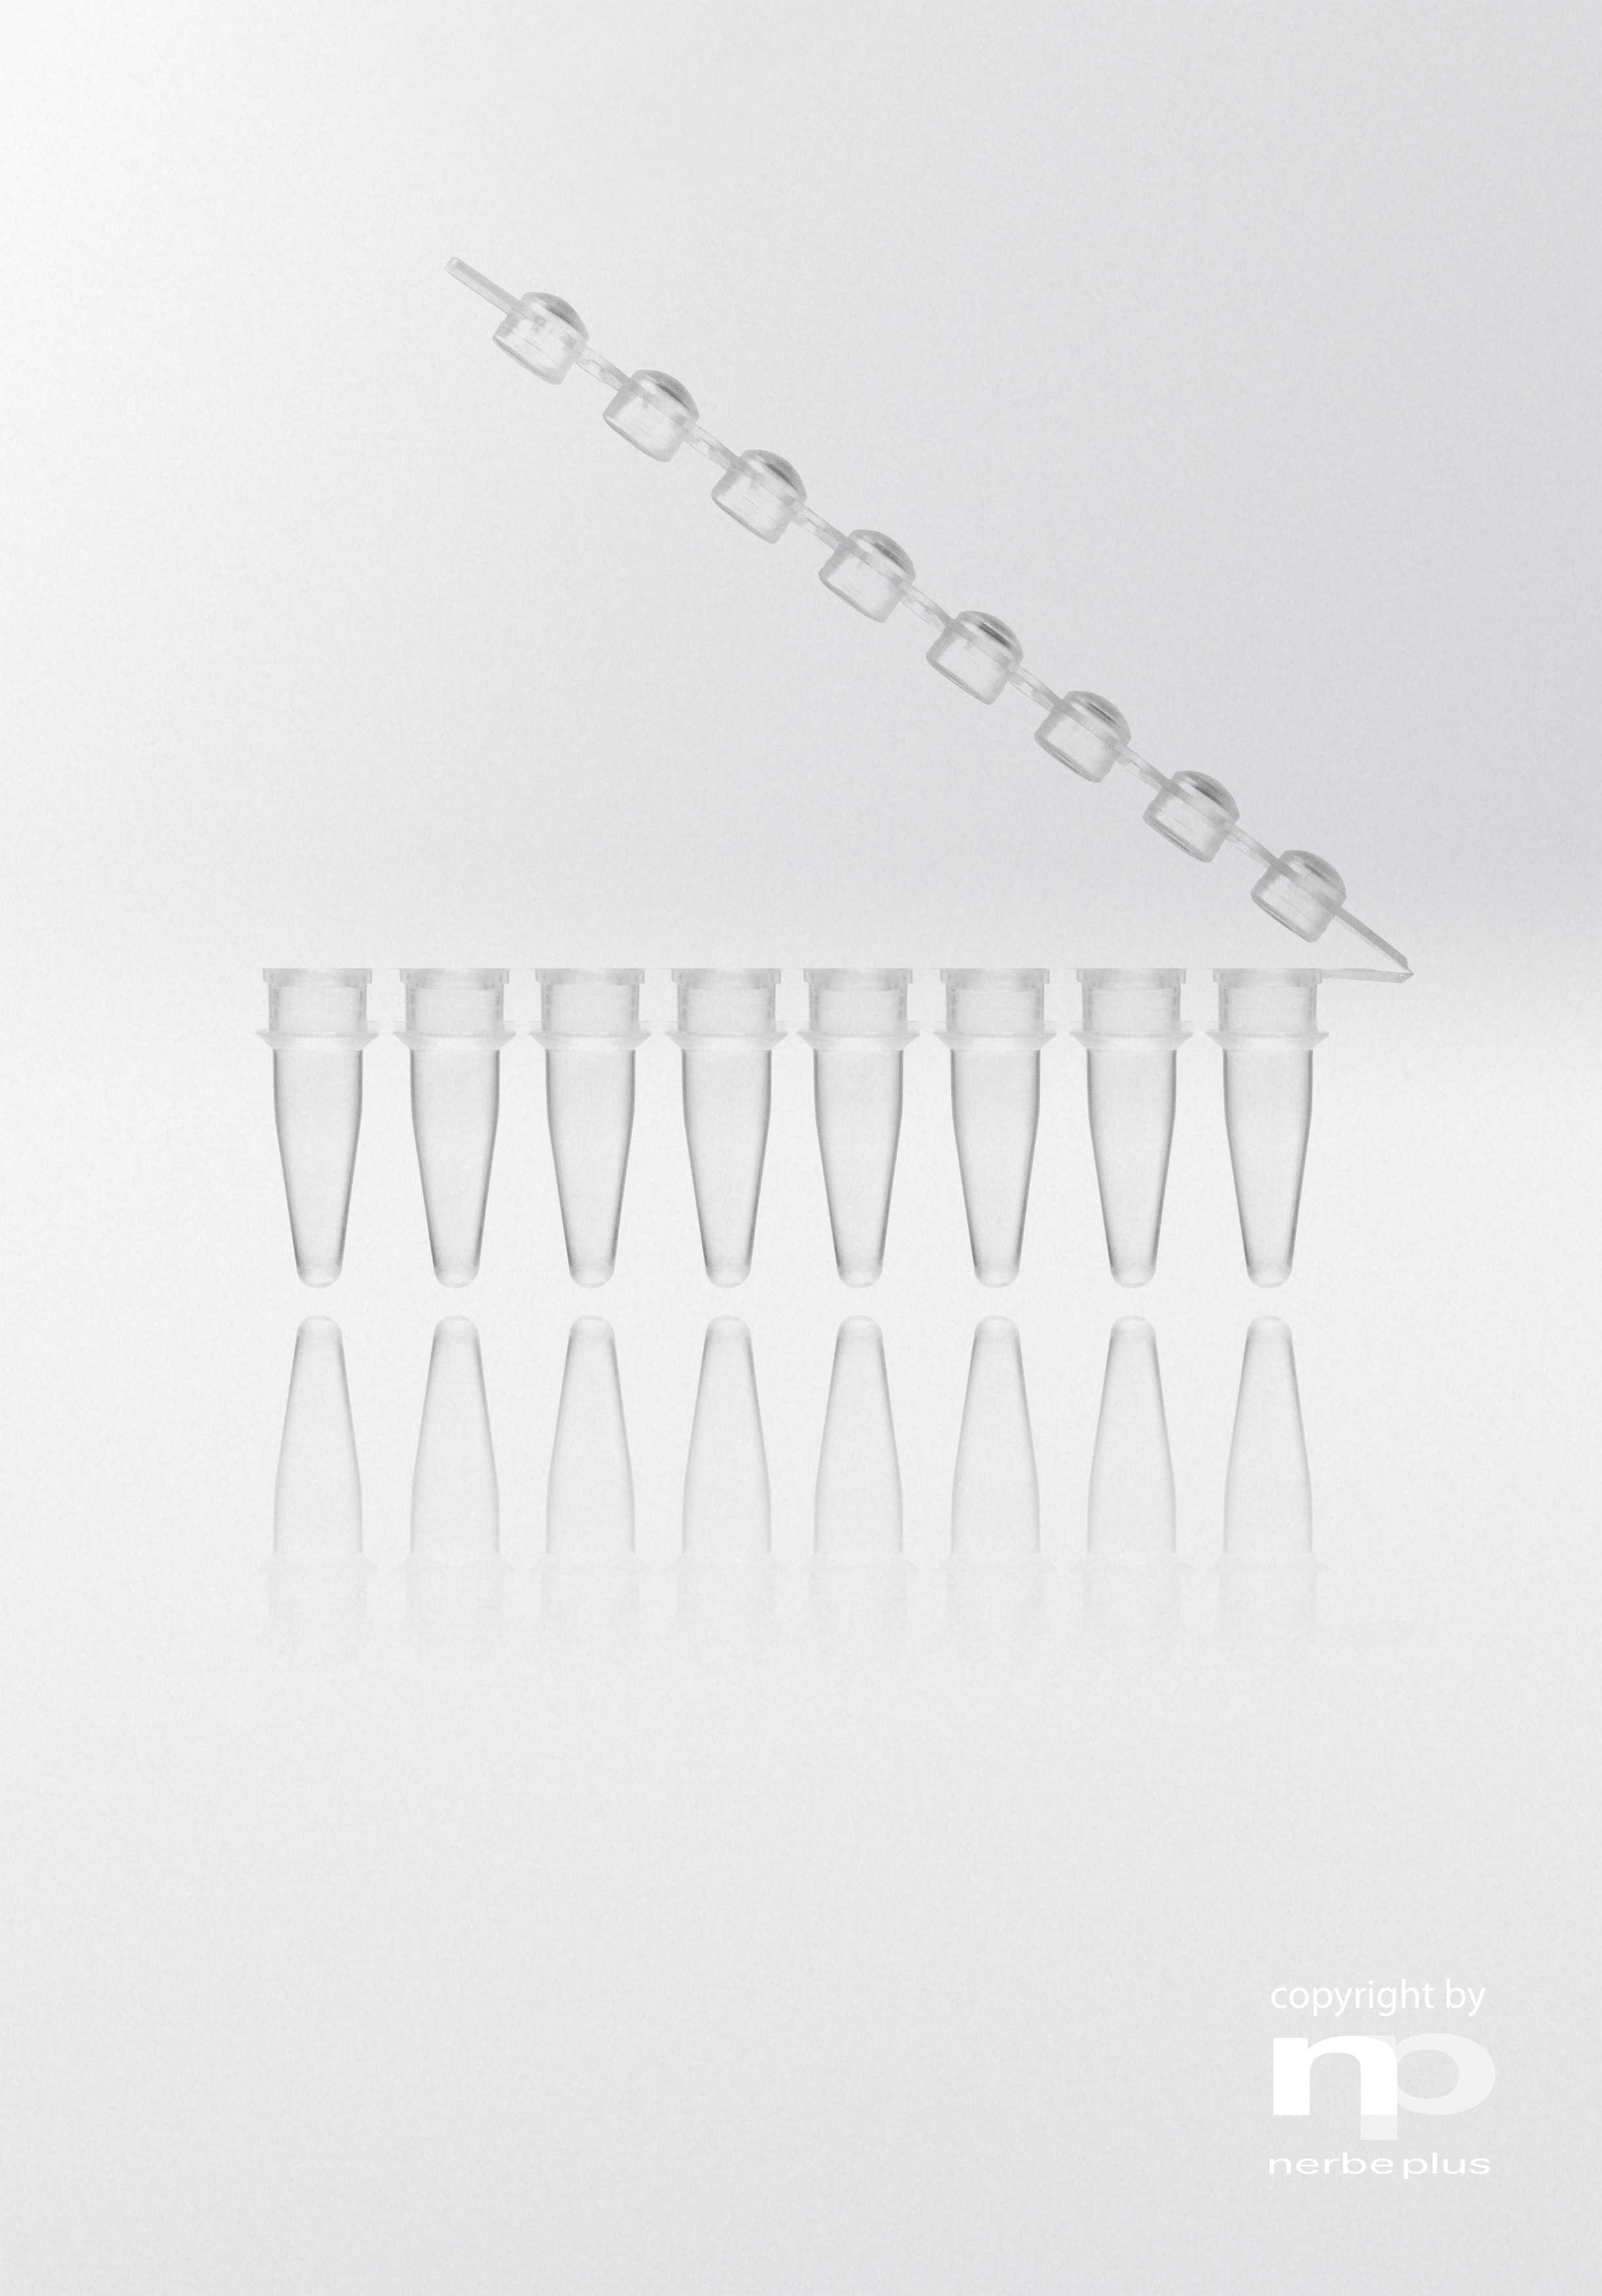 Tiras de tubos para PCR. NERBE-PLUS. Capacidad (ml): 0,2. Resist. centrif. (g): 6000. Tapón: Redondeado. Color tubo/tapón: Transparente/ Transparente. Esterilidad: PCR Ready.